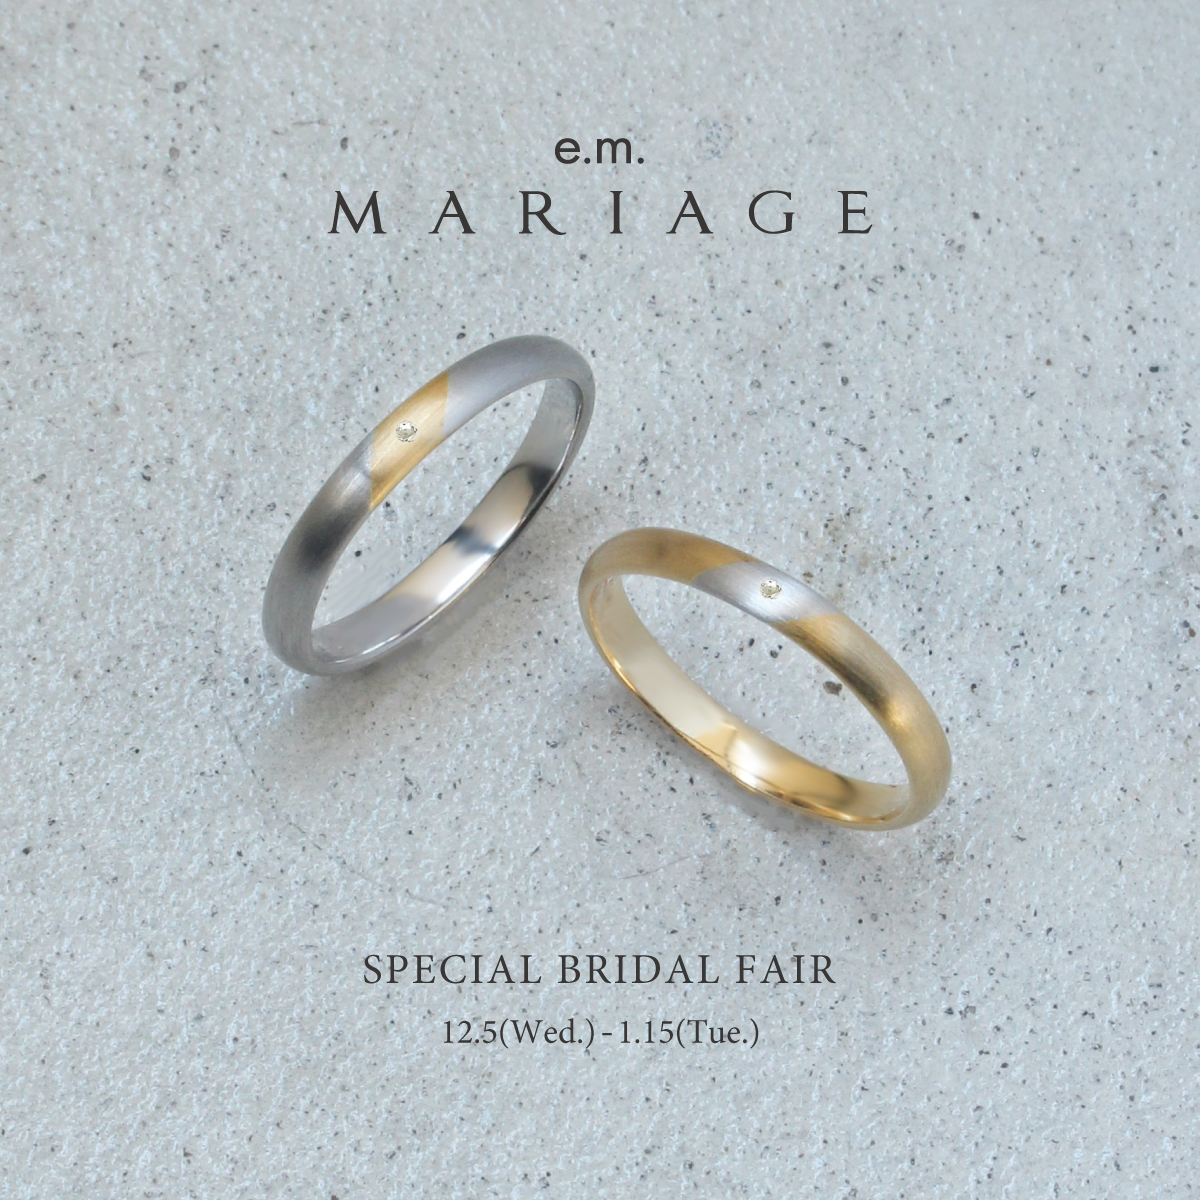 e.m.MARIAGE_specialbridalfair